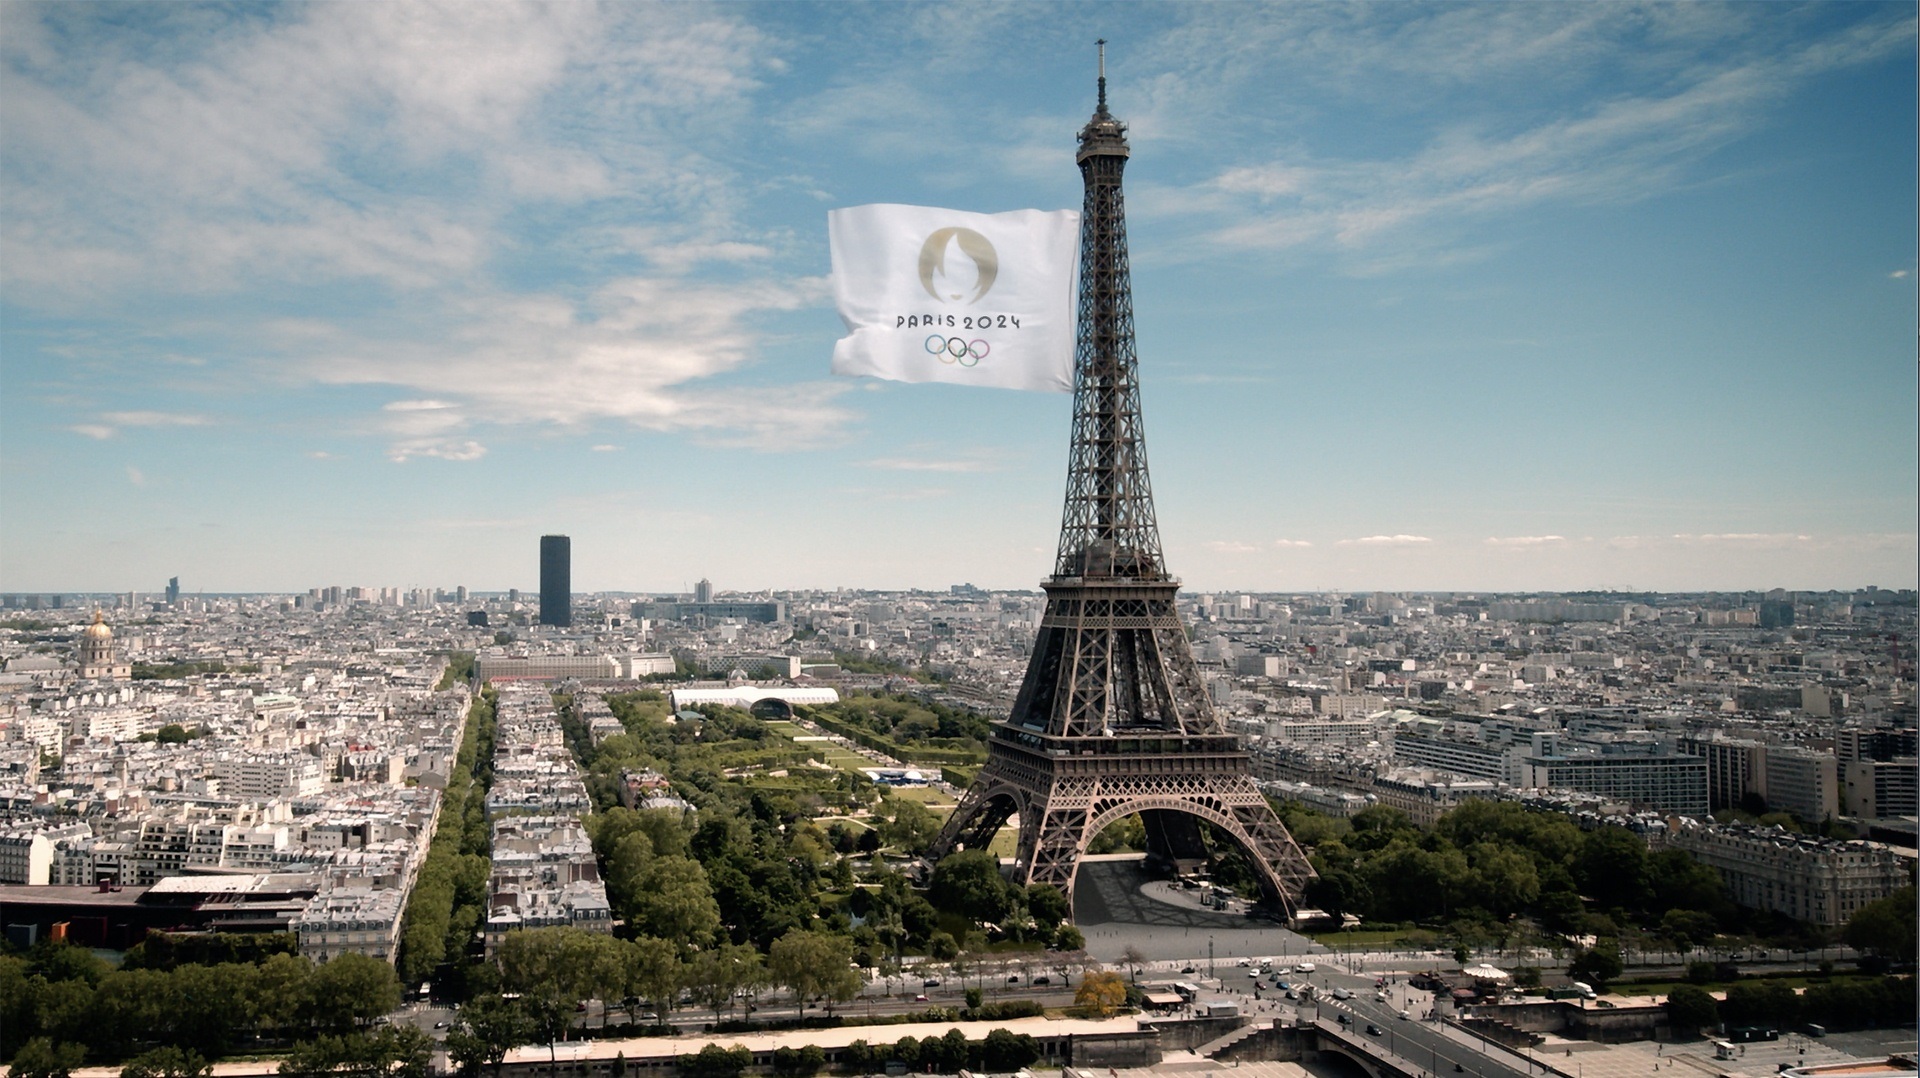 2 euro 2021 - Jogos Olímpicos de Verão, Paris 2024, França - Valor